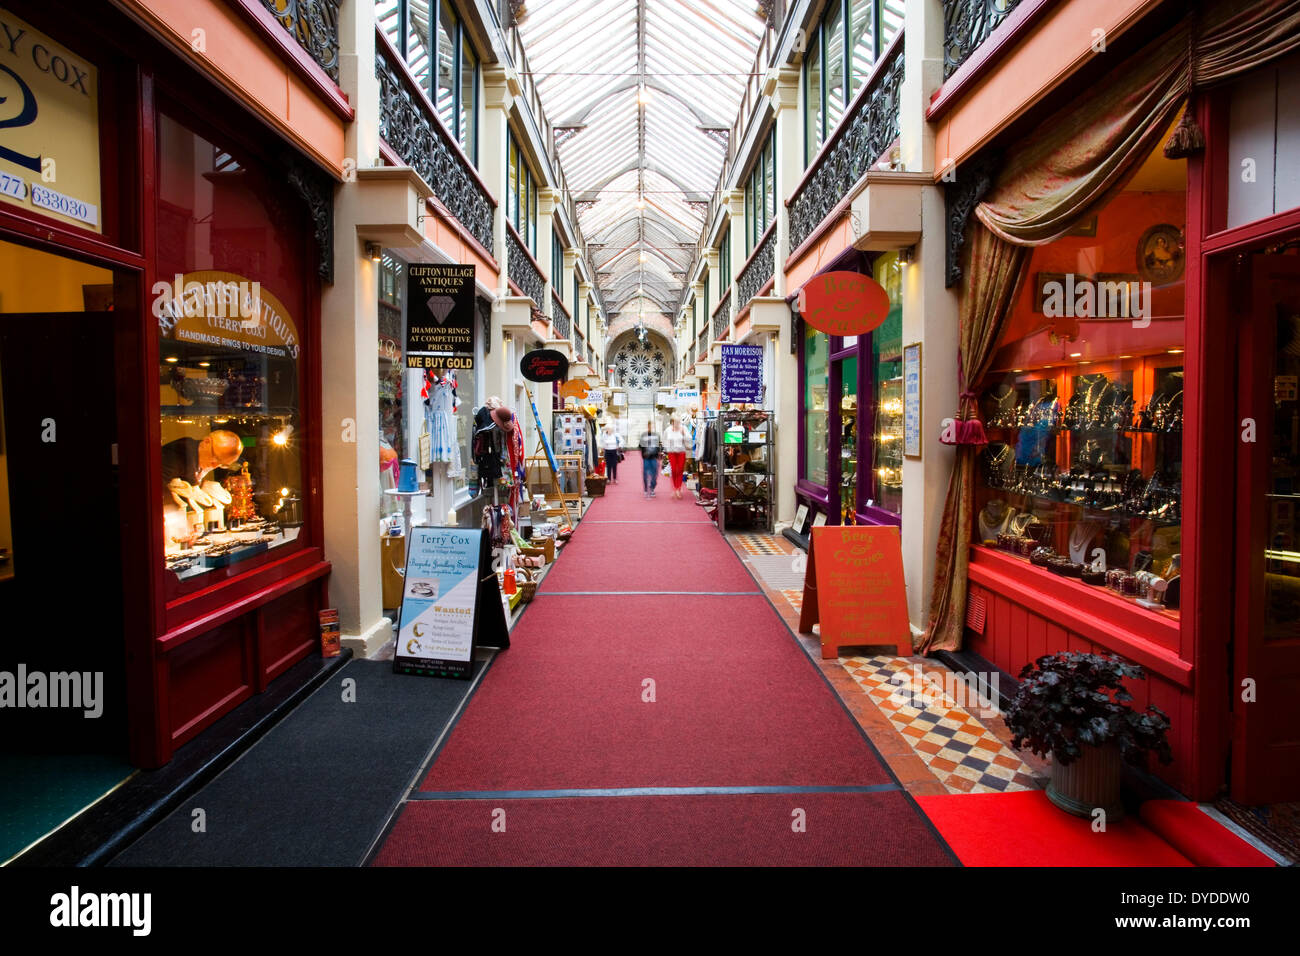 The Clifton shopping arcade in Bristol. Stock Photo